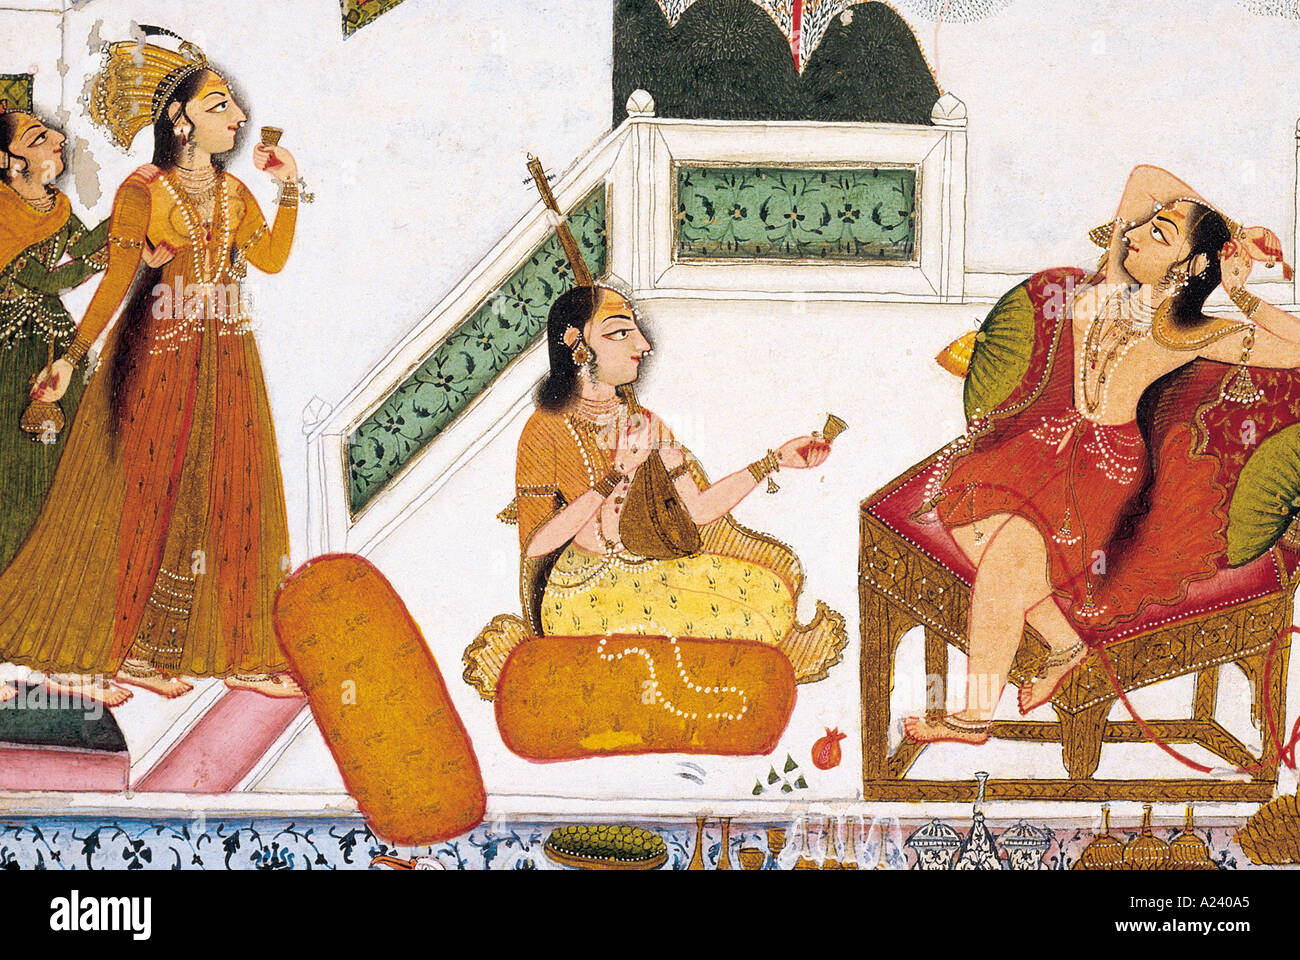 Ragazza con gli operatori. Kotah, Rajasthan, India. Data: 1775 A.D. Dimensioni originali: 21,5 x 21,5 cm. Foto Stock